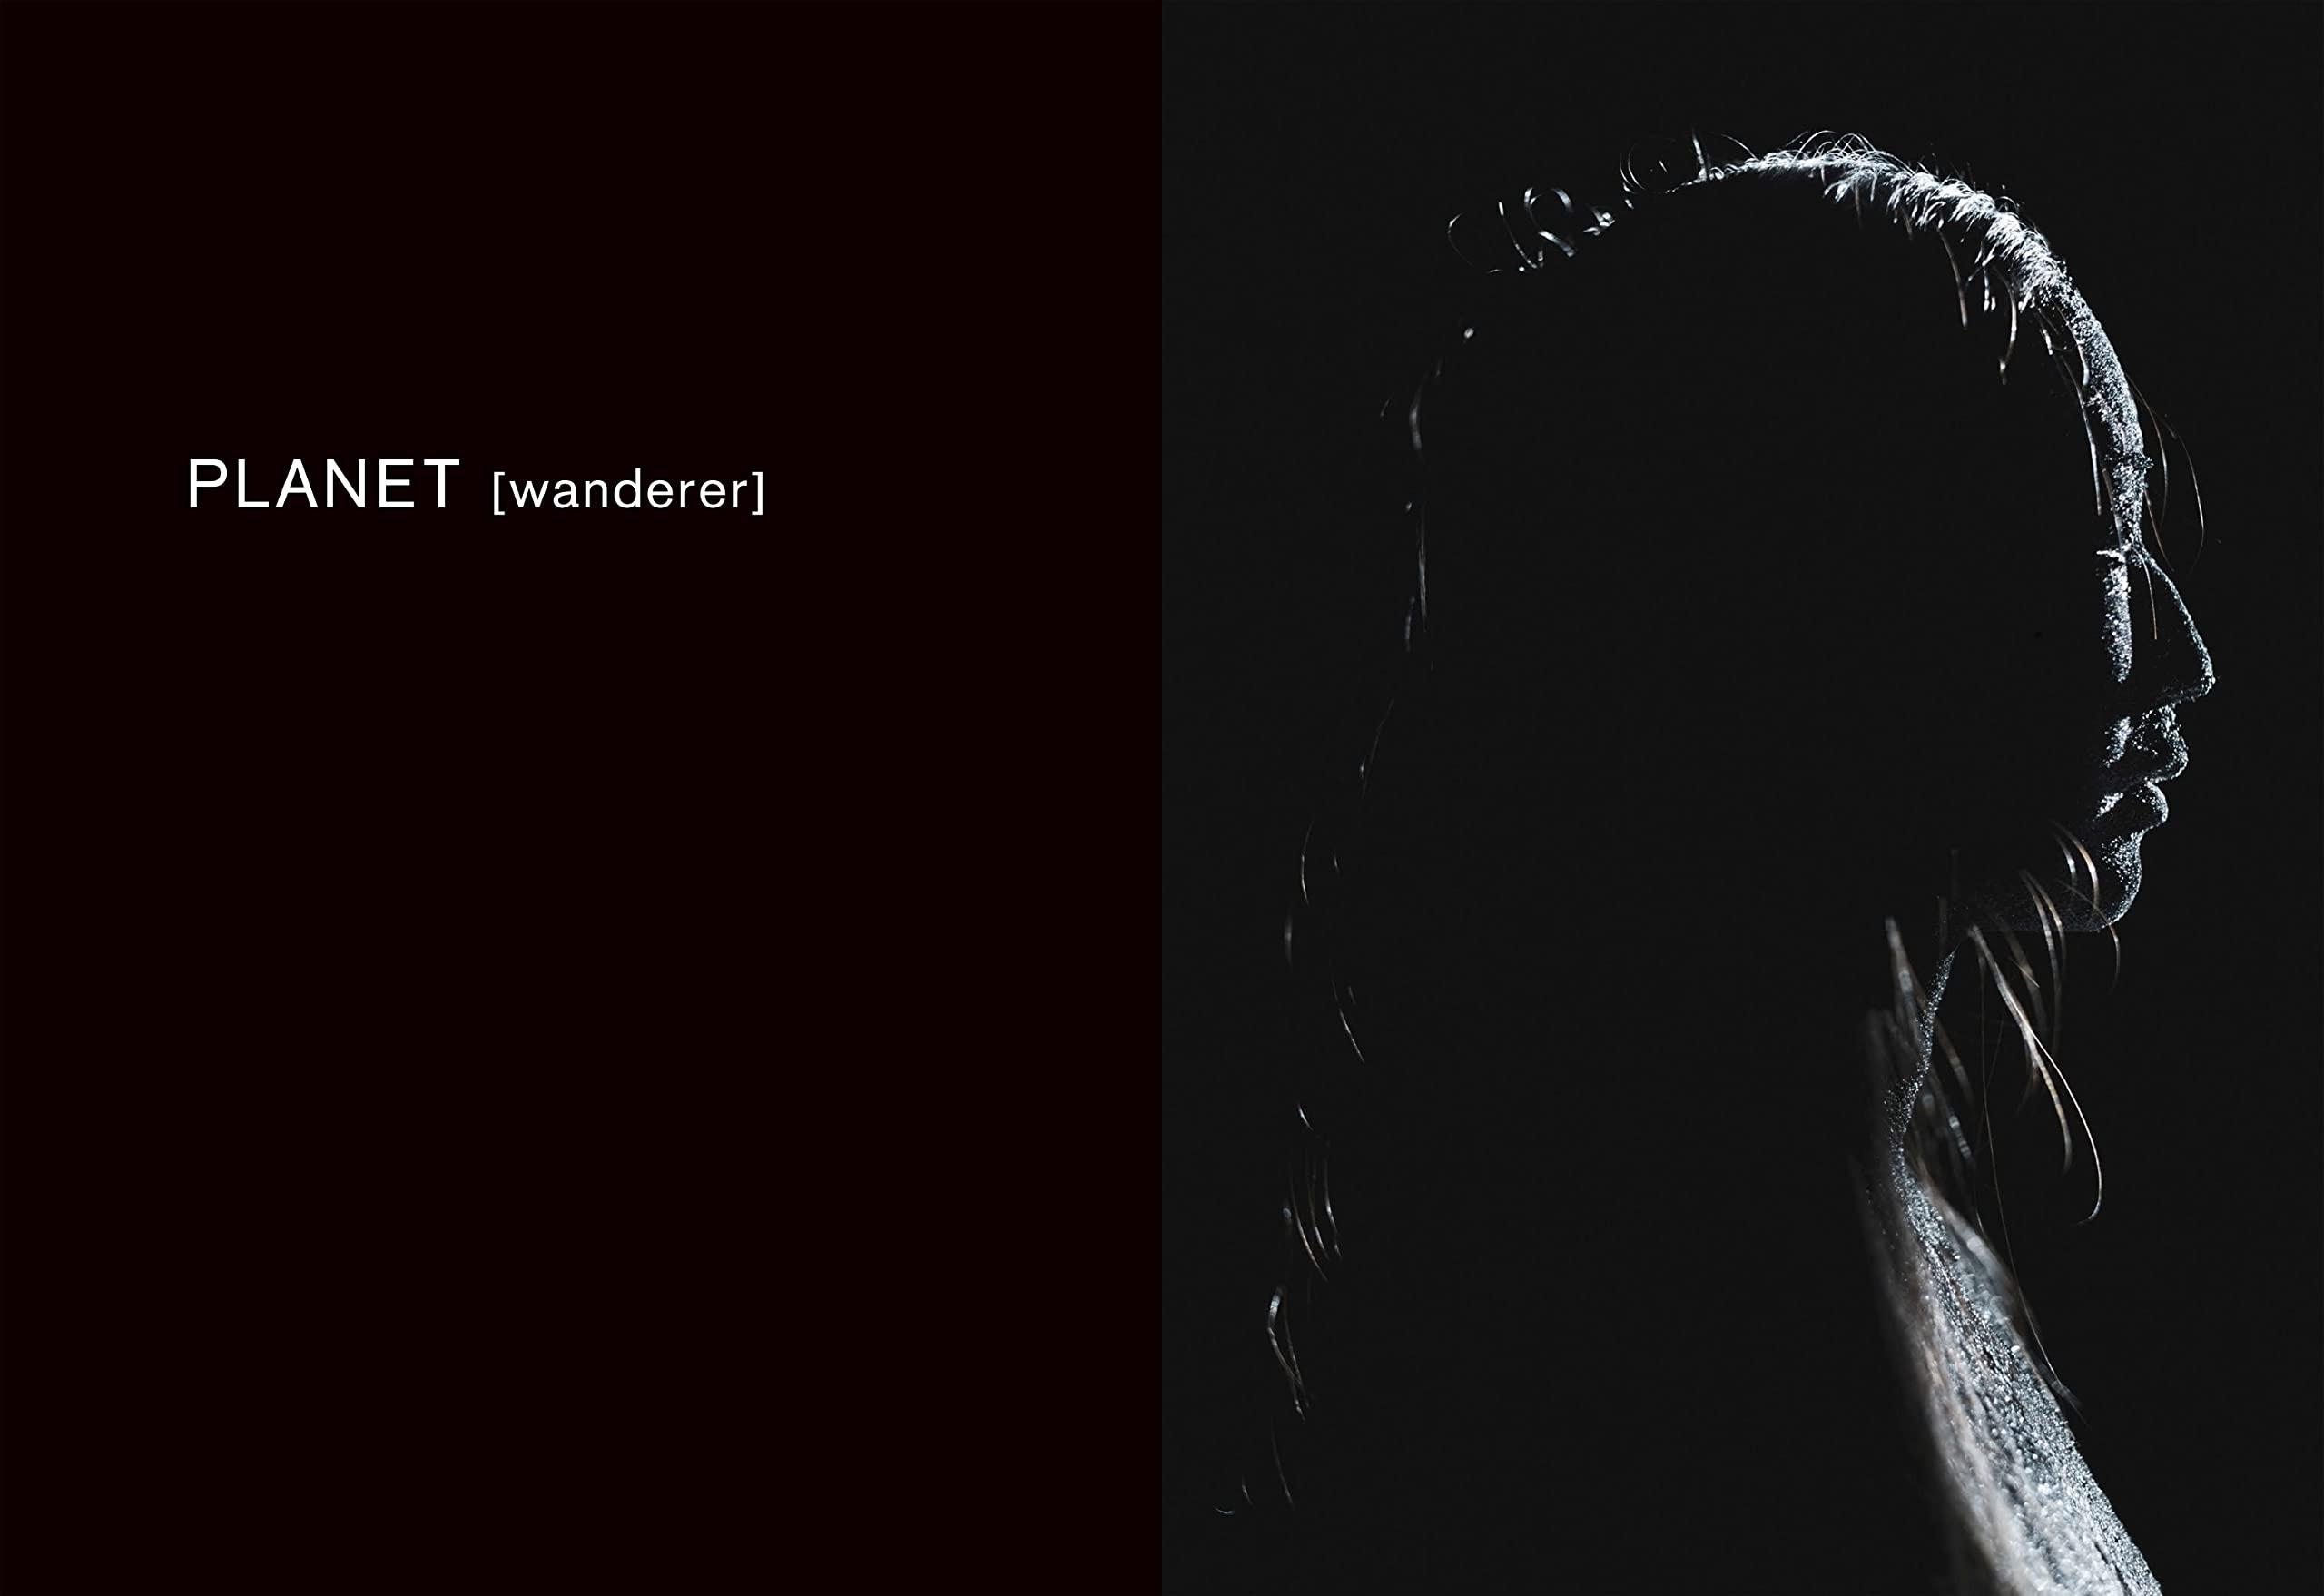 VESSEL / Mist / Planet [wanderer] Damien Jalet | Kohei Nawa ダミアン・ジャレ 、 名和晃平 作品集